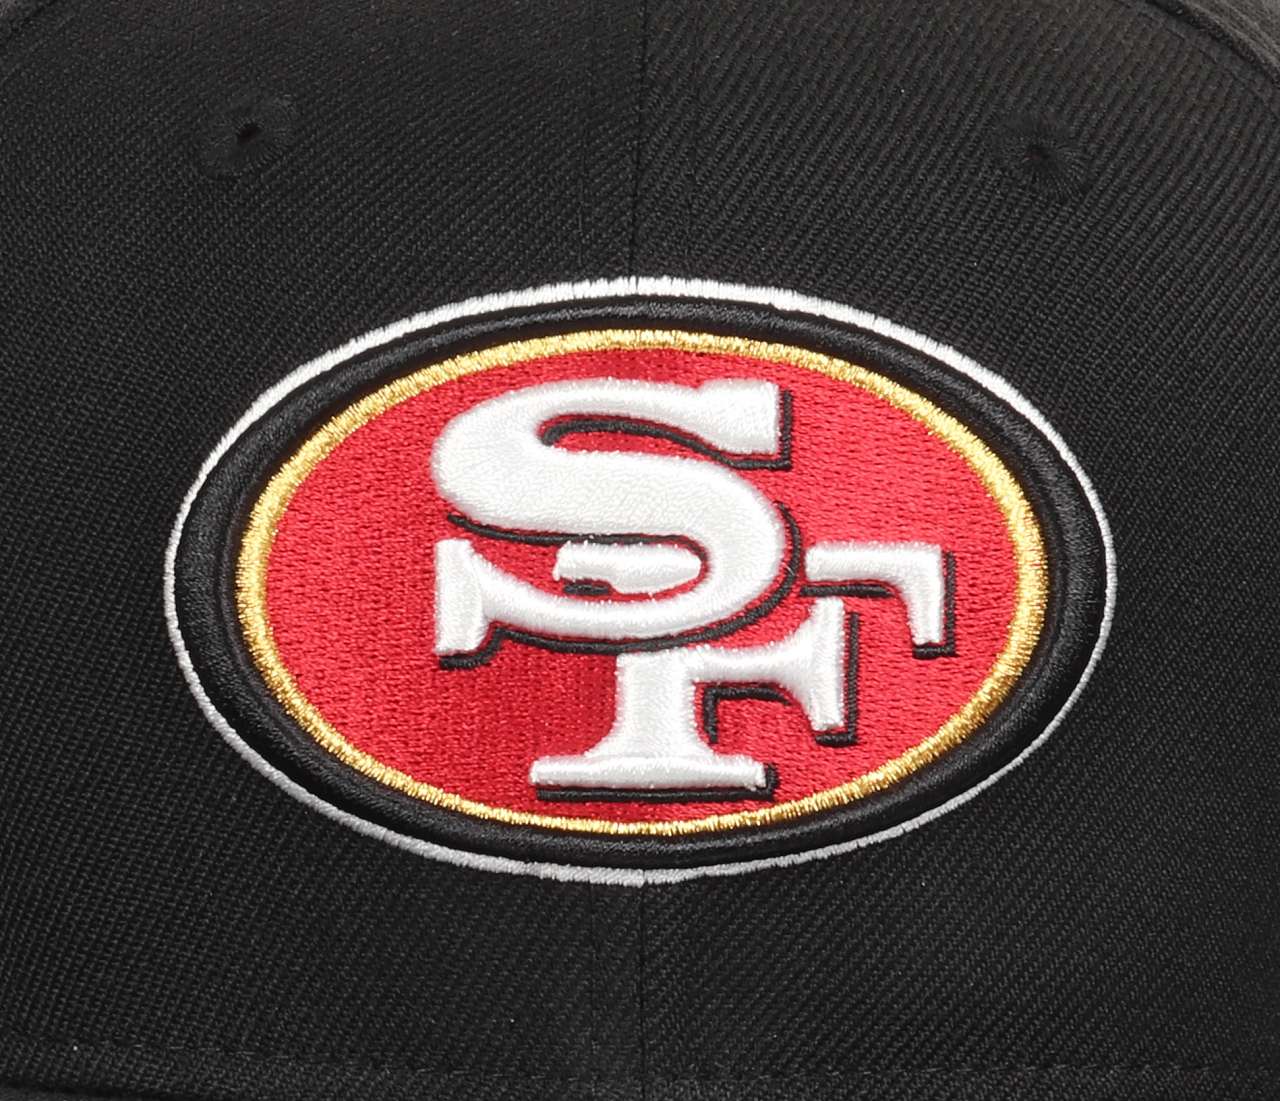 San Francisco 49ers NFL Black 9Fifty Original Fit Snapback Cap New Era